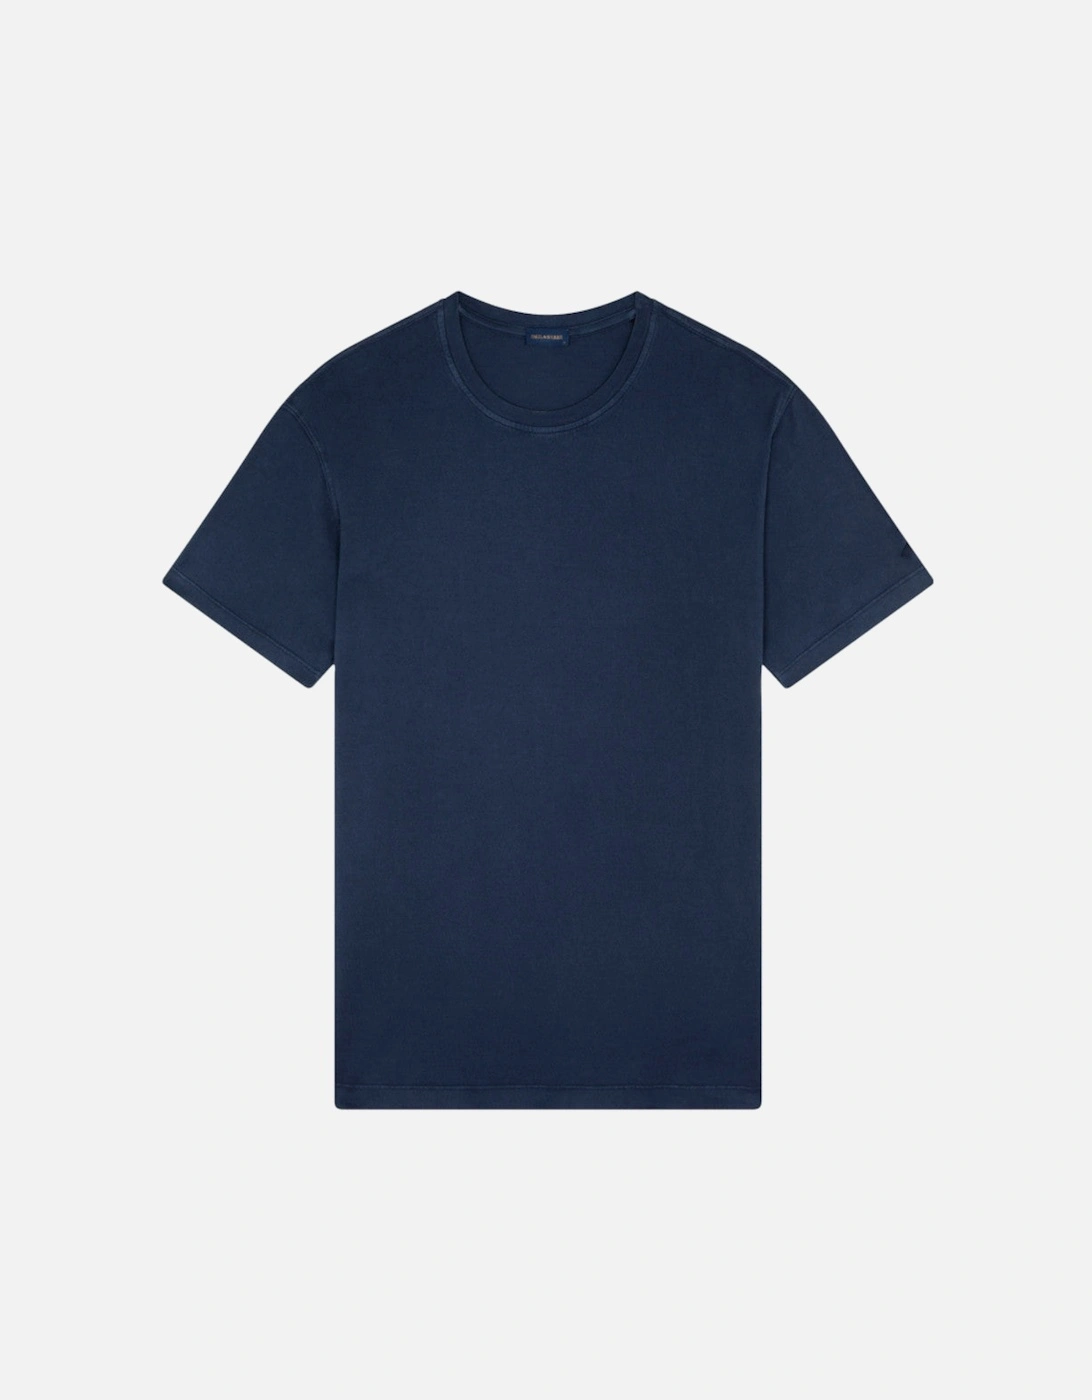 GD Cotton Jersey T-Shirt 050 Navy, 5 of 4